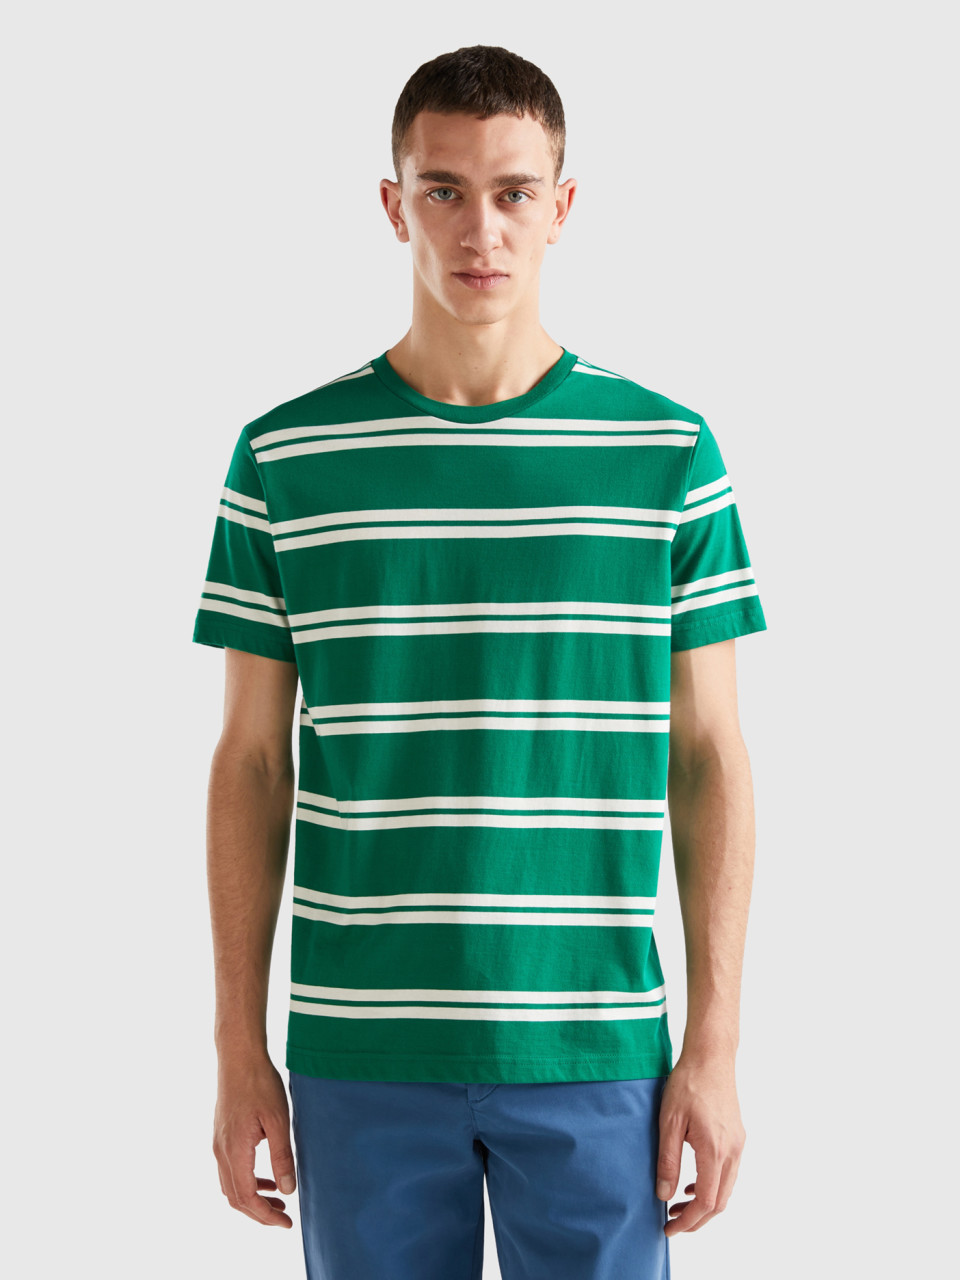 Benetton, Striped Short Sleeve T-shirt, Green, Men